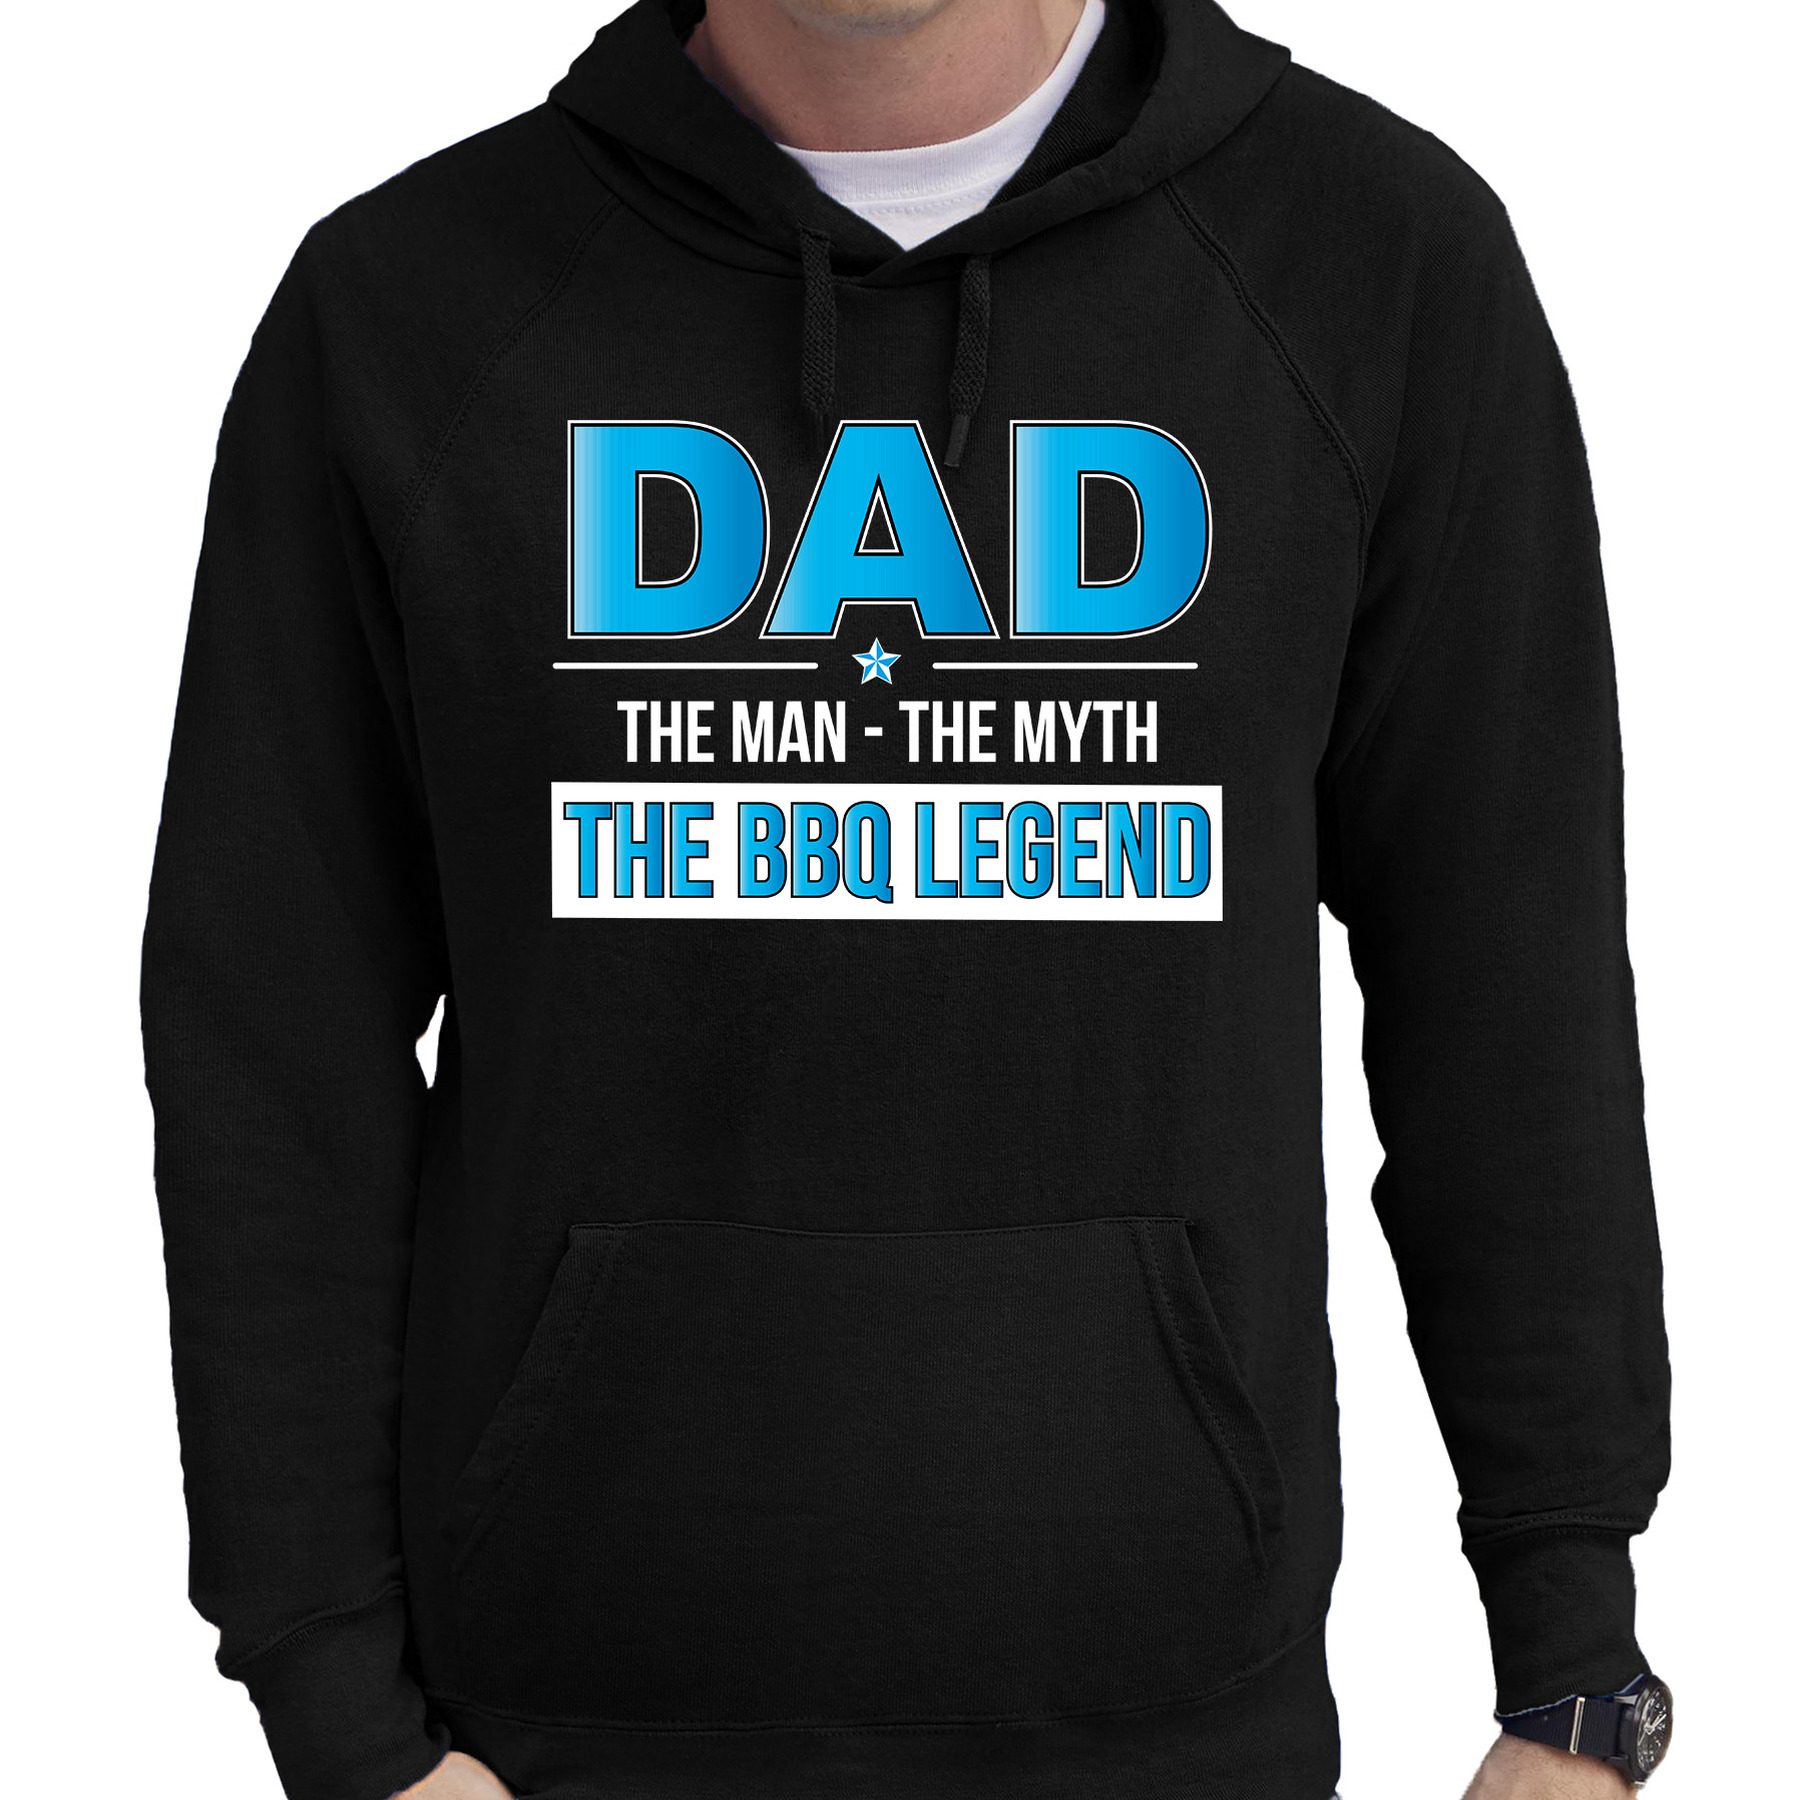 Barbecue cadeau hoodie the bbq legend zwart voor heren bbq hooded sweater